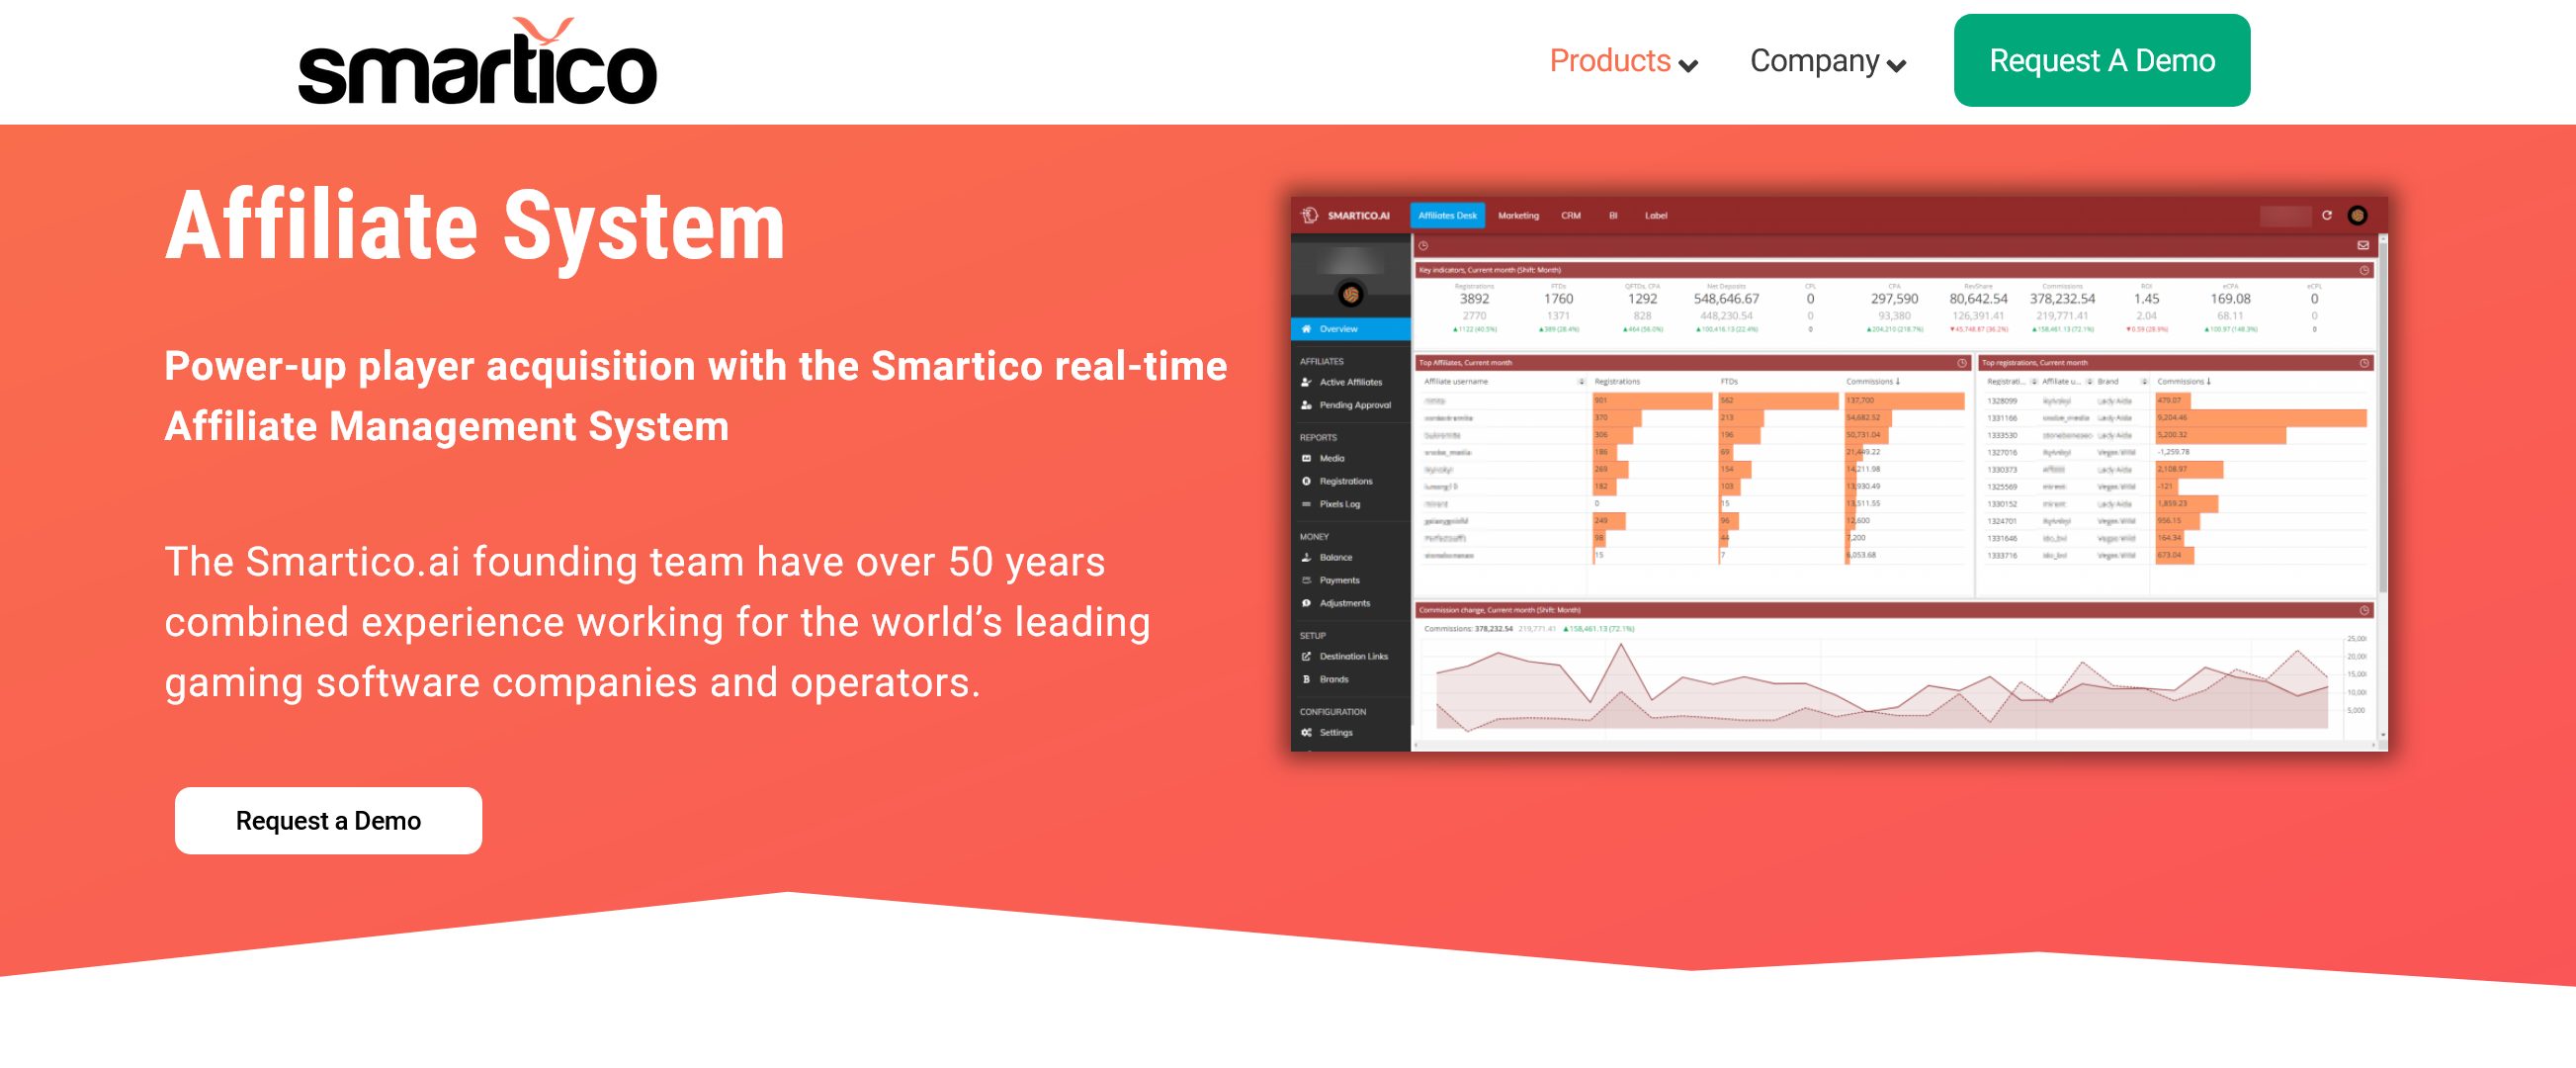 برنامج التسويق بالعمولة لمواقع الويب والعلامات التجارية igaming - Smartico